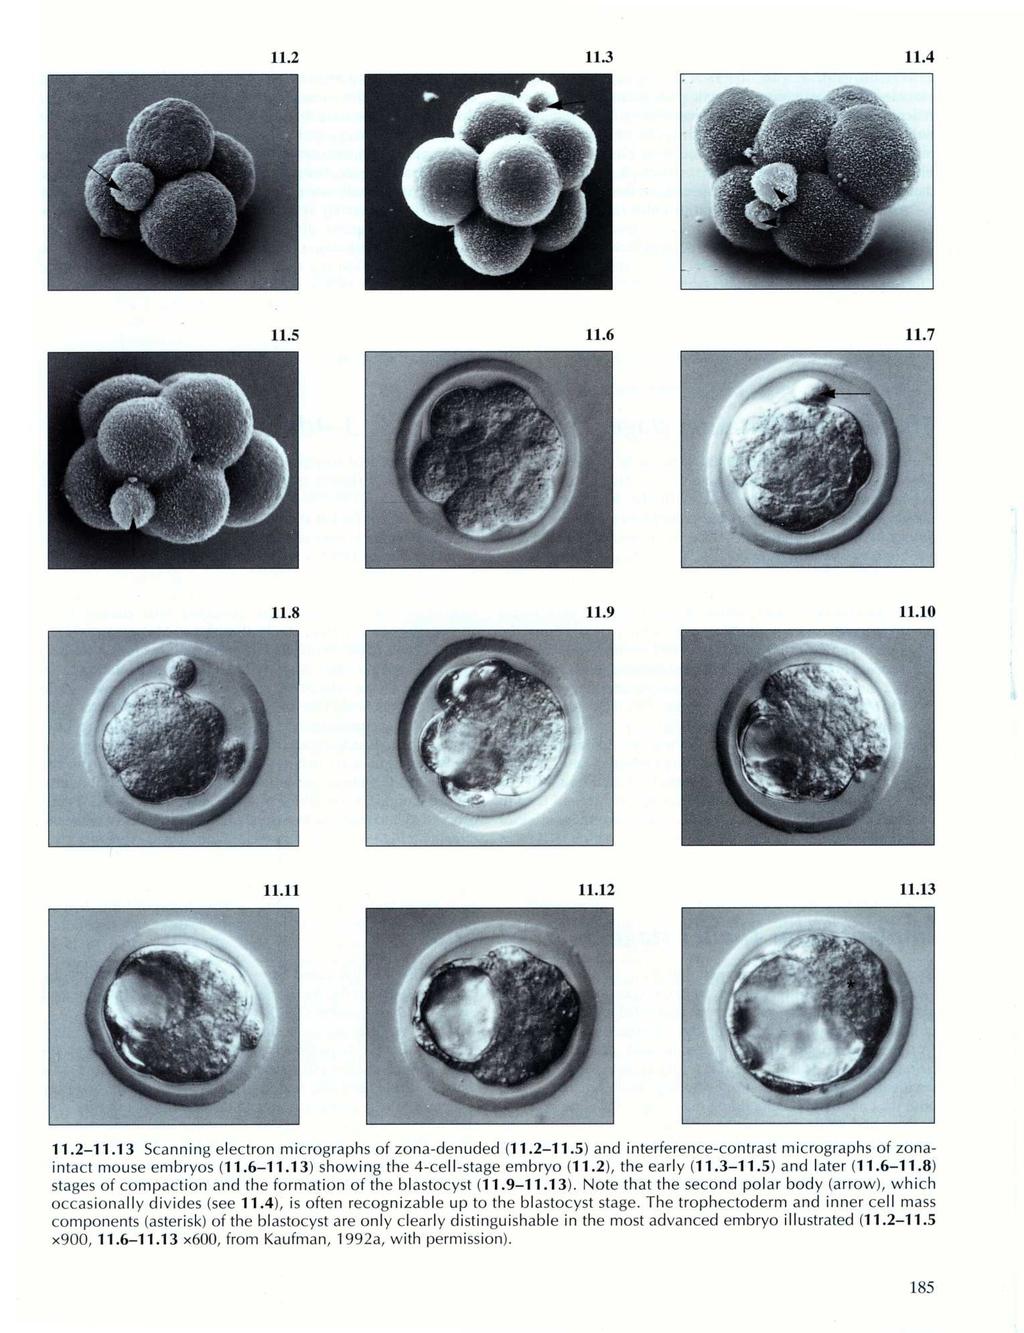 blastocisto de mamífero contêm MASSA CELULAR INTERNA que formará o embrião